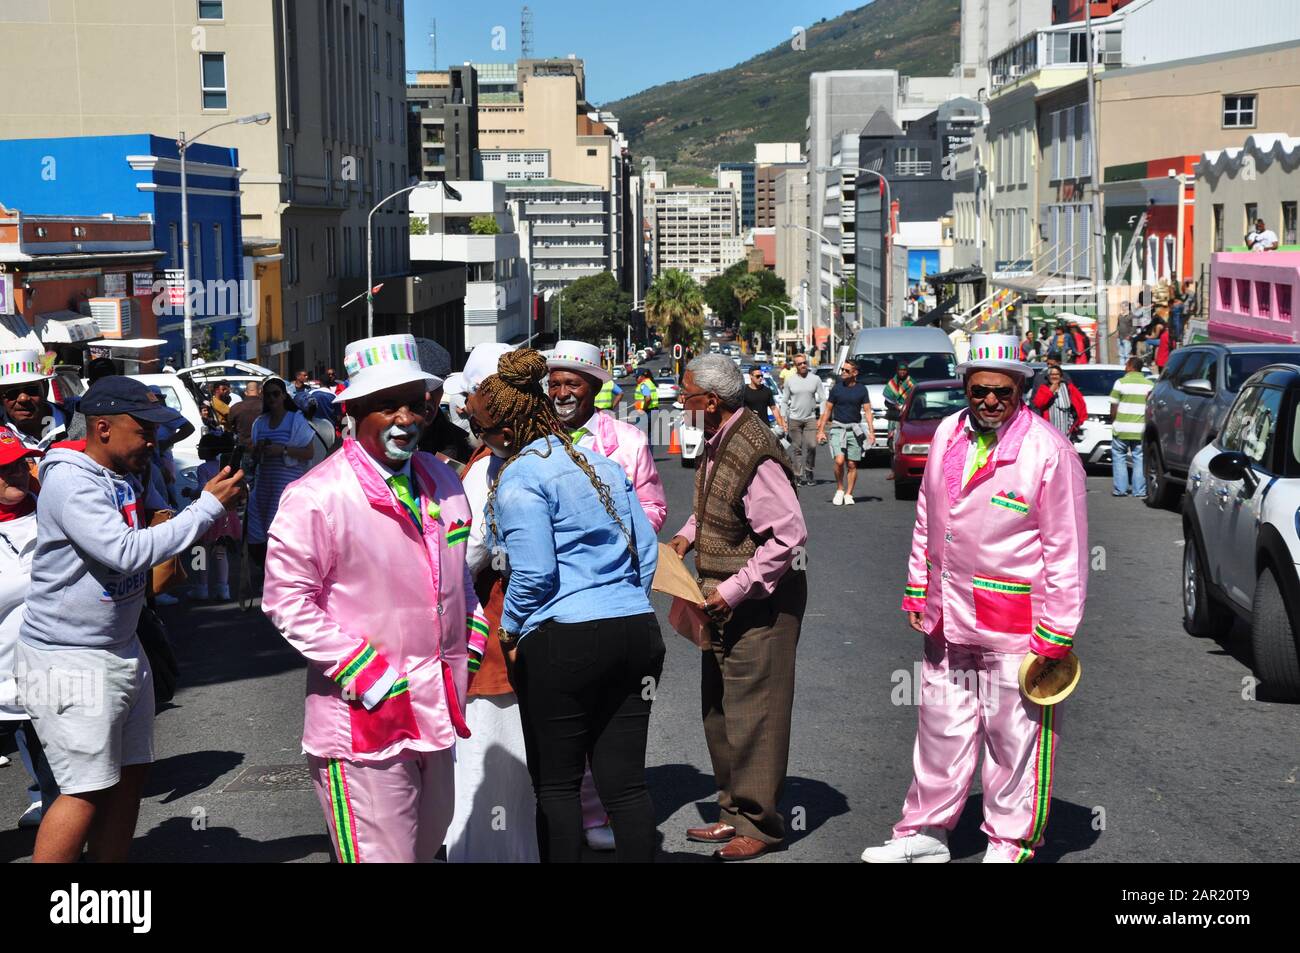 Les membres habillés de la communauté Bo-Kaap se préparant à la visite du prince Harry & Meghan de leur façon unique colorée et exubérante. Banque D'Images